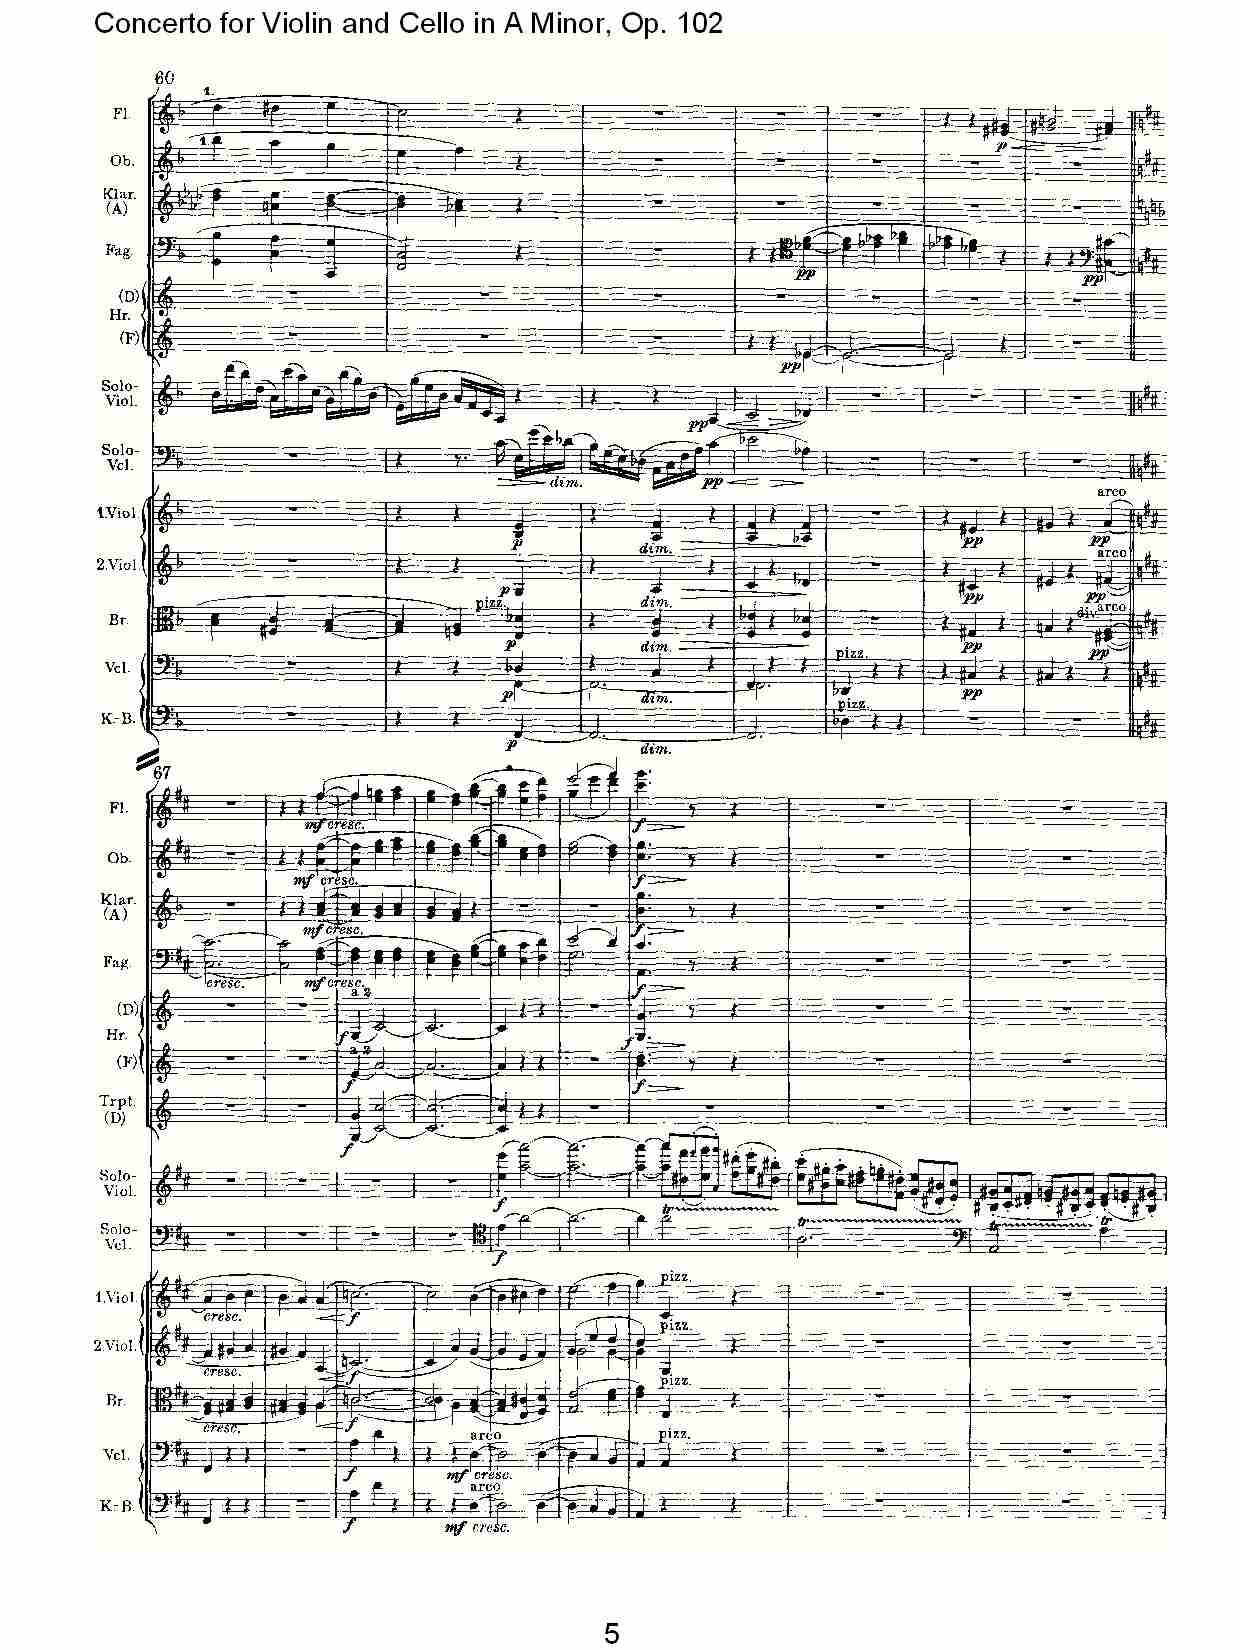 A小调小提琴与大提琴协奏曲, Op.102第二乐章（一）总谱（图5）